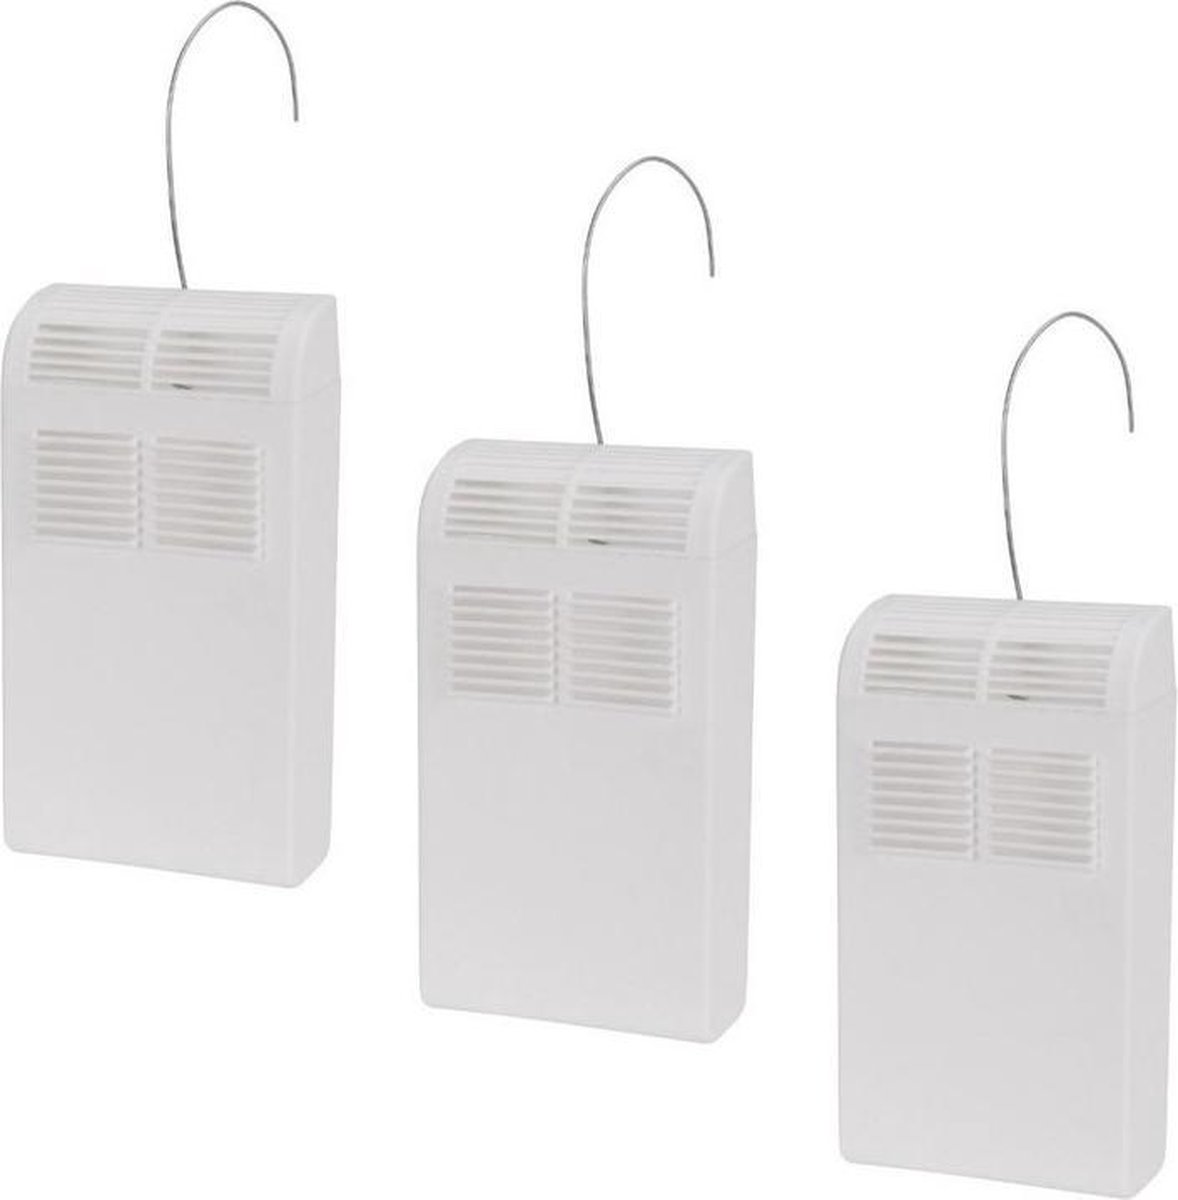 Pakket van 6x stuks witte verwarming waterverdampers/luchtbevochtigers 21,5 cm - Waterverdampers voor de verwarming - Luchtvochtigheid verhogen